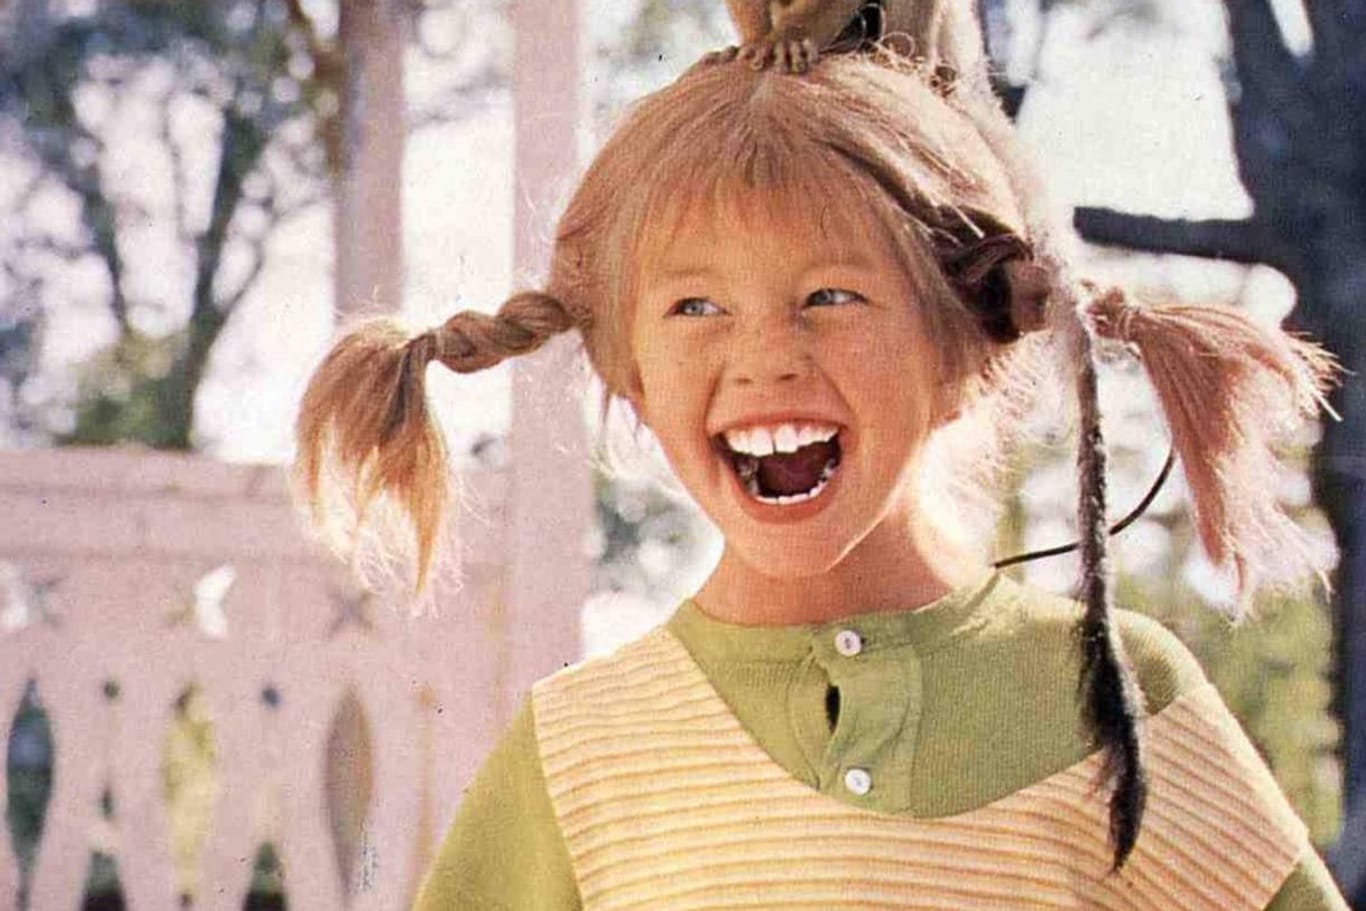 Inger Nilsson war neun Jahre alt, als sie in die Rolle der Pippi schlüpfte.